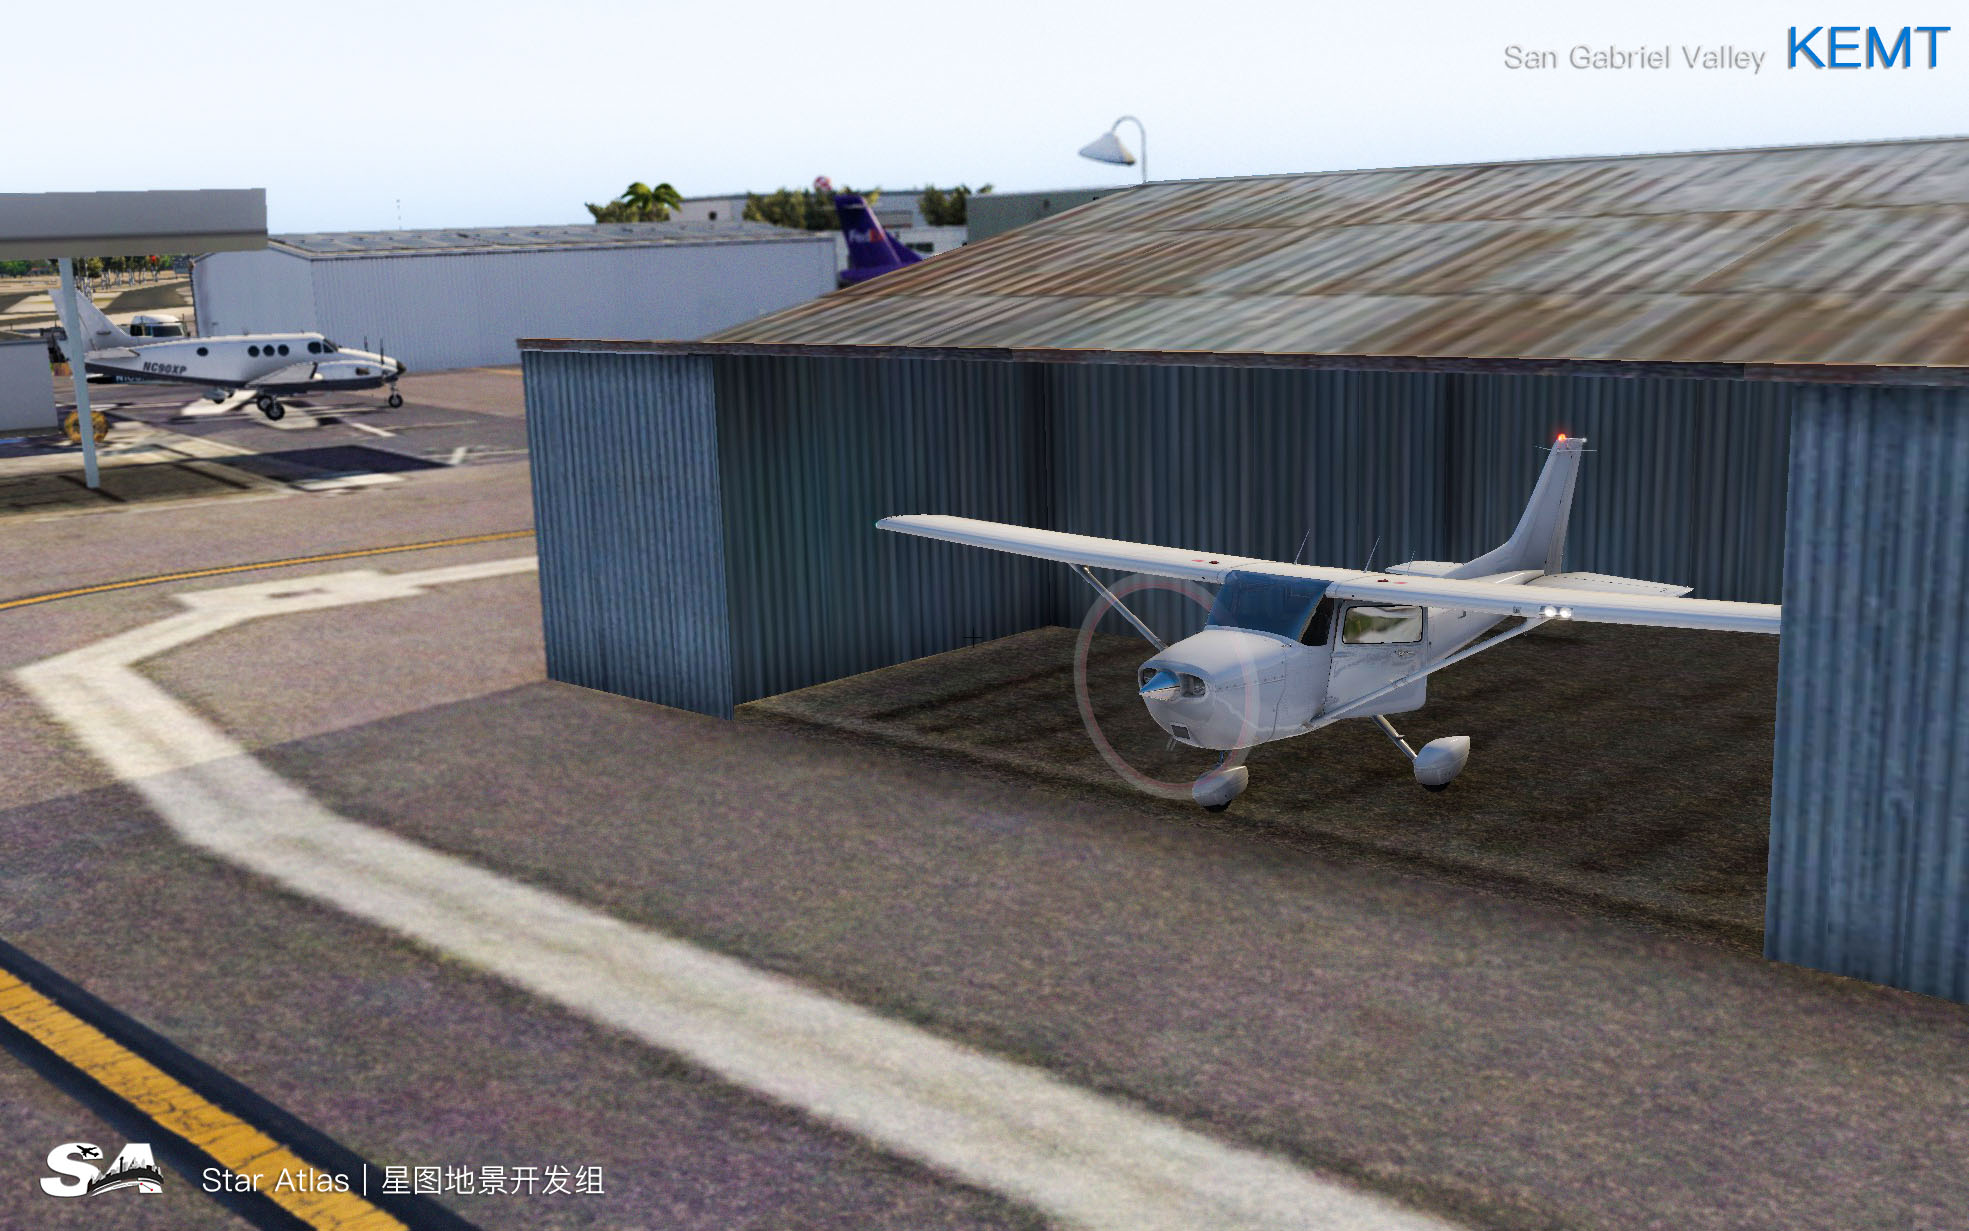 【X-Plane】KEMT-圣盖博谷机场 HD 1.0-9974 